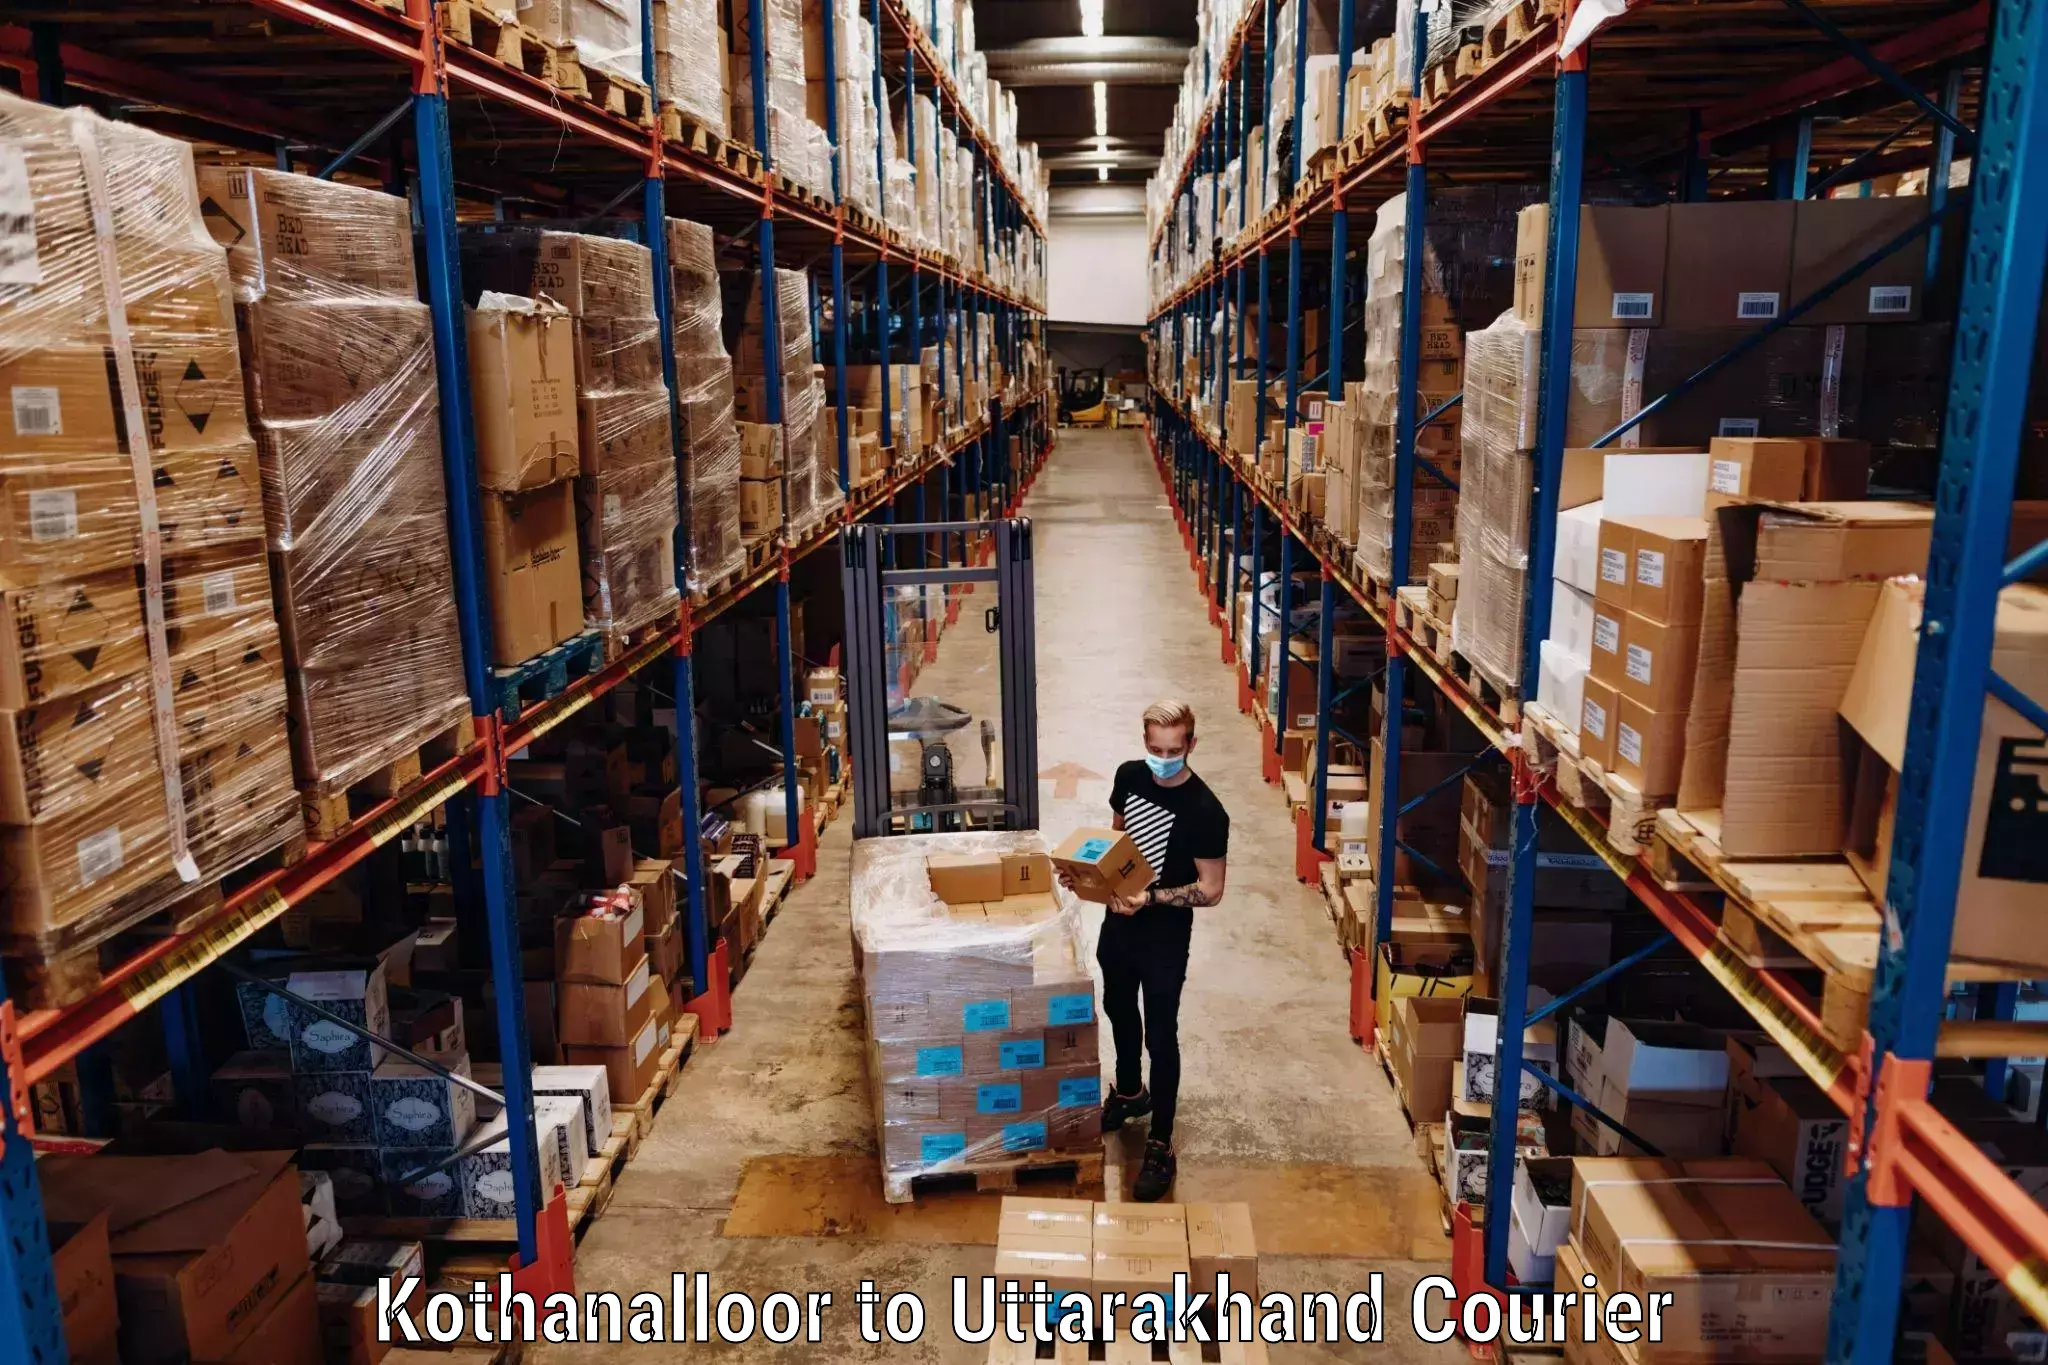 Luggage transport service Kothanalloor to Paithani